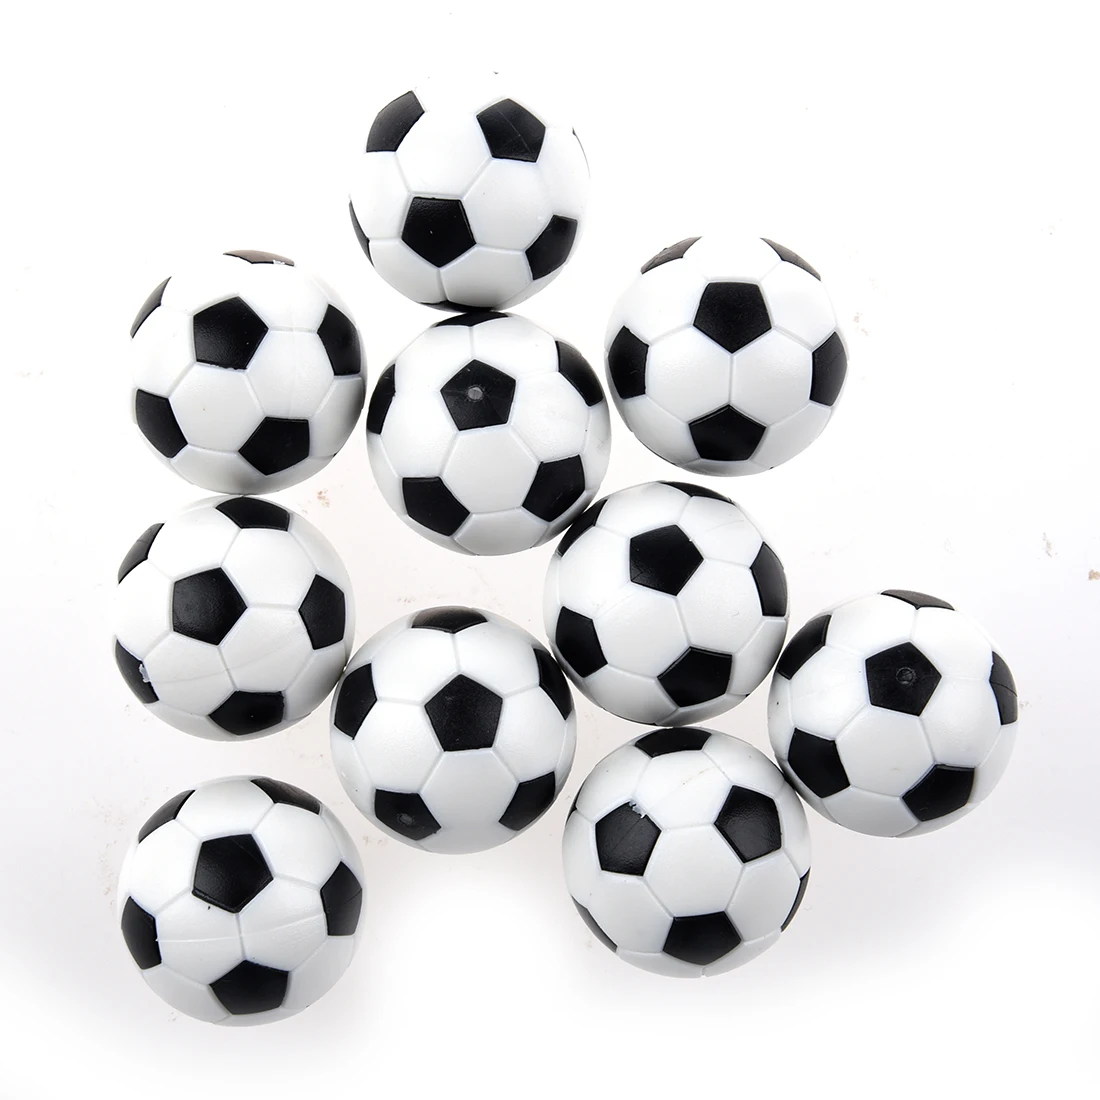 LGFM-20pcs, маленького размера, круглой формы с диаметром 32 мм Пластик футбольный настольный футбол футбольный мяч